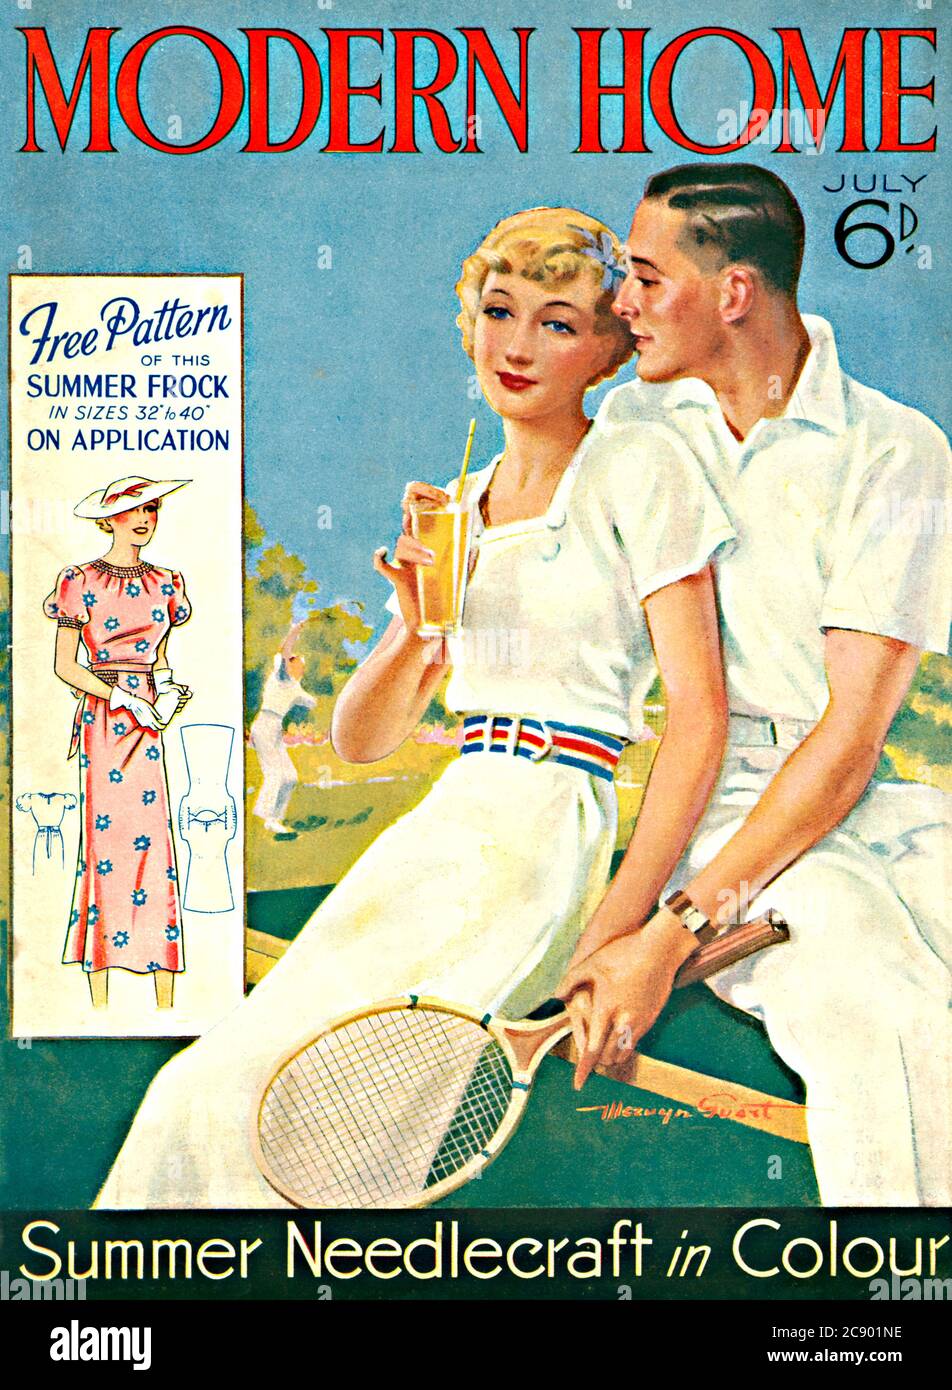 Modern Home, Tennis, 1936 Cover der monatlichen Home Magazin, mit einem kostenlosen Muster für einen Sommer Kittel und needlecraft in Farbe Stockfoto